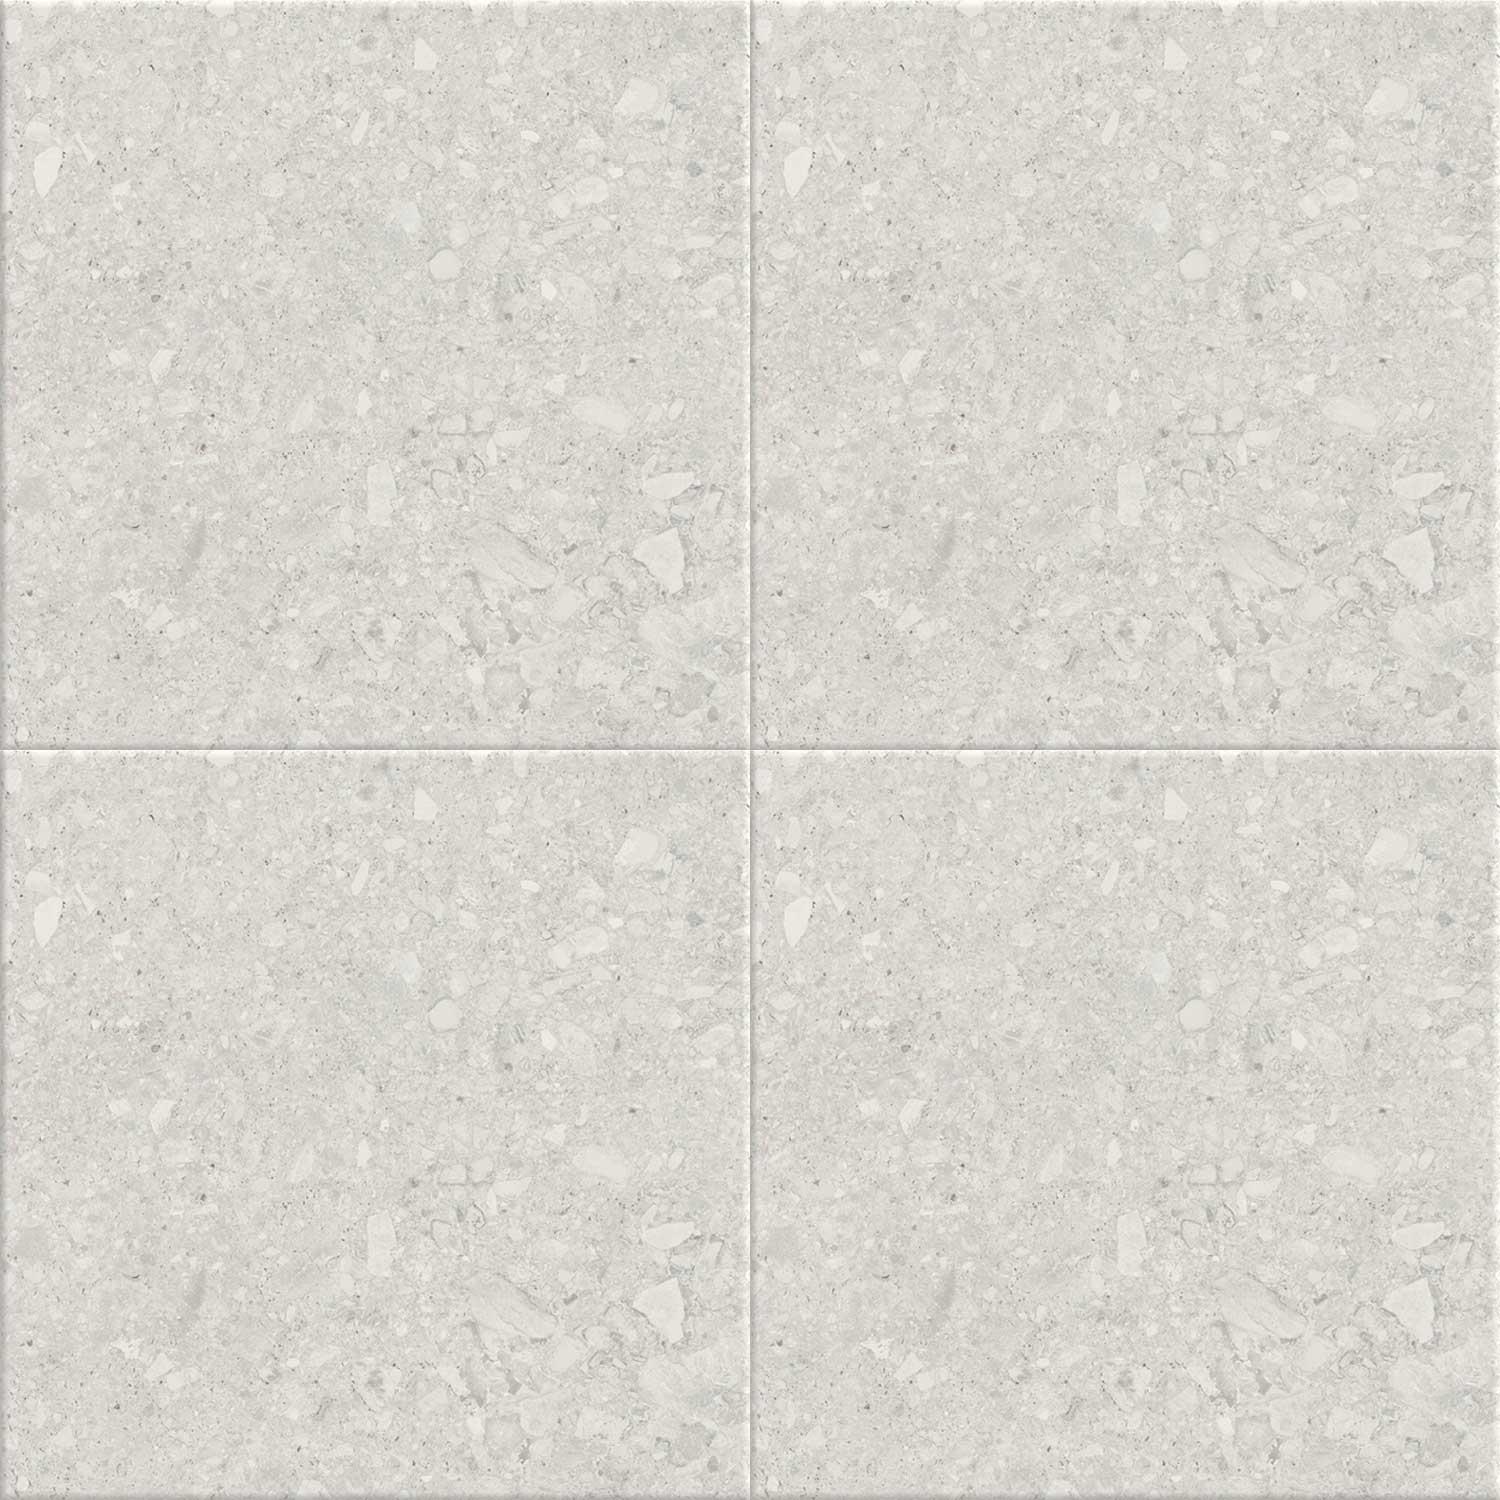 Ceppo De Gre White Porcelain Tarrazzo Tile Indoor Wall Floor 900 x 900mm